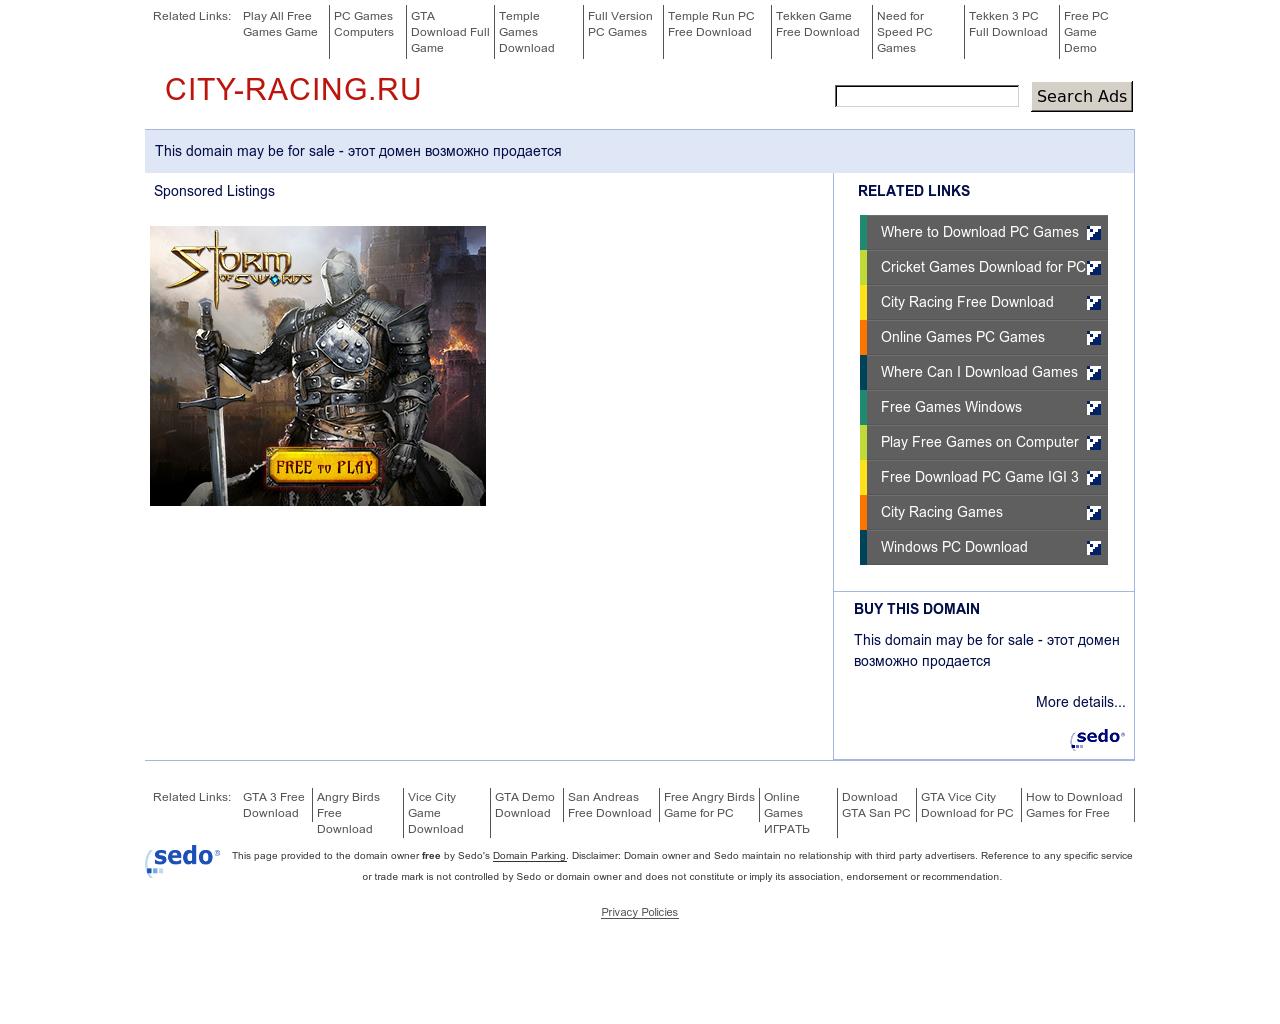 Изображение сайта city-racing.ru в разрешении 1280x1024